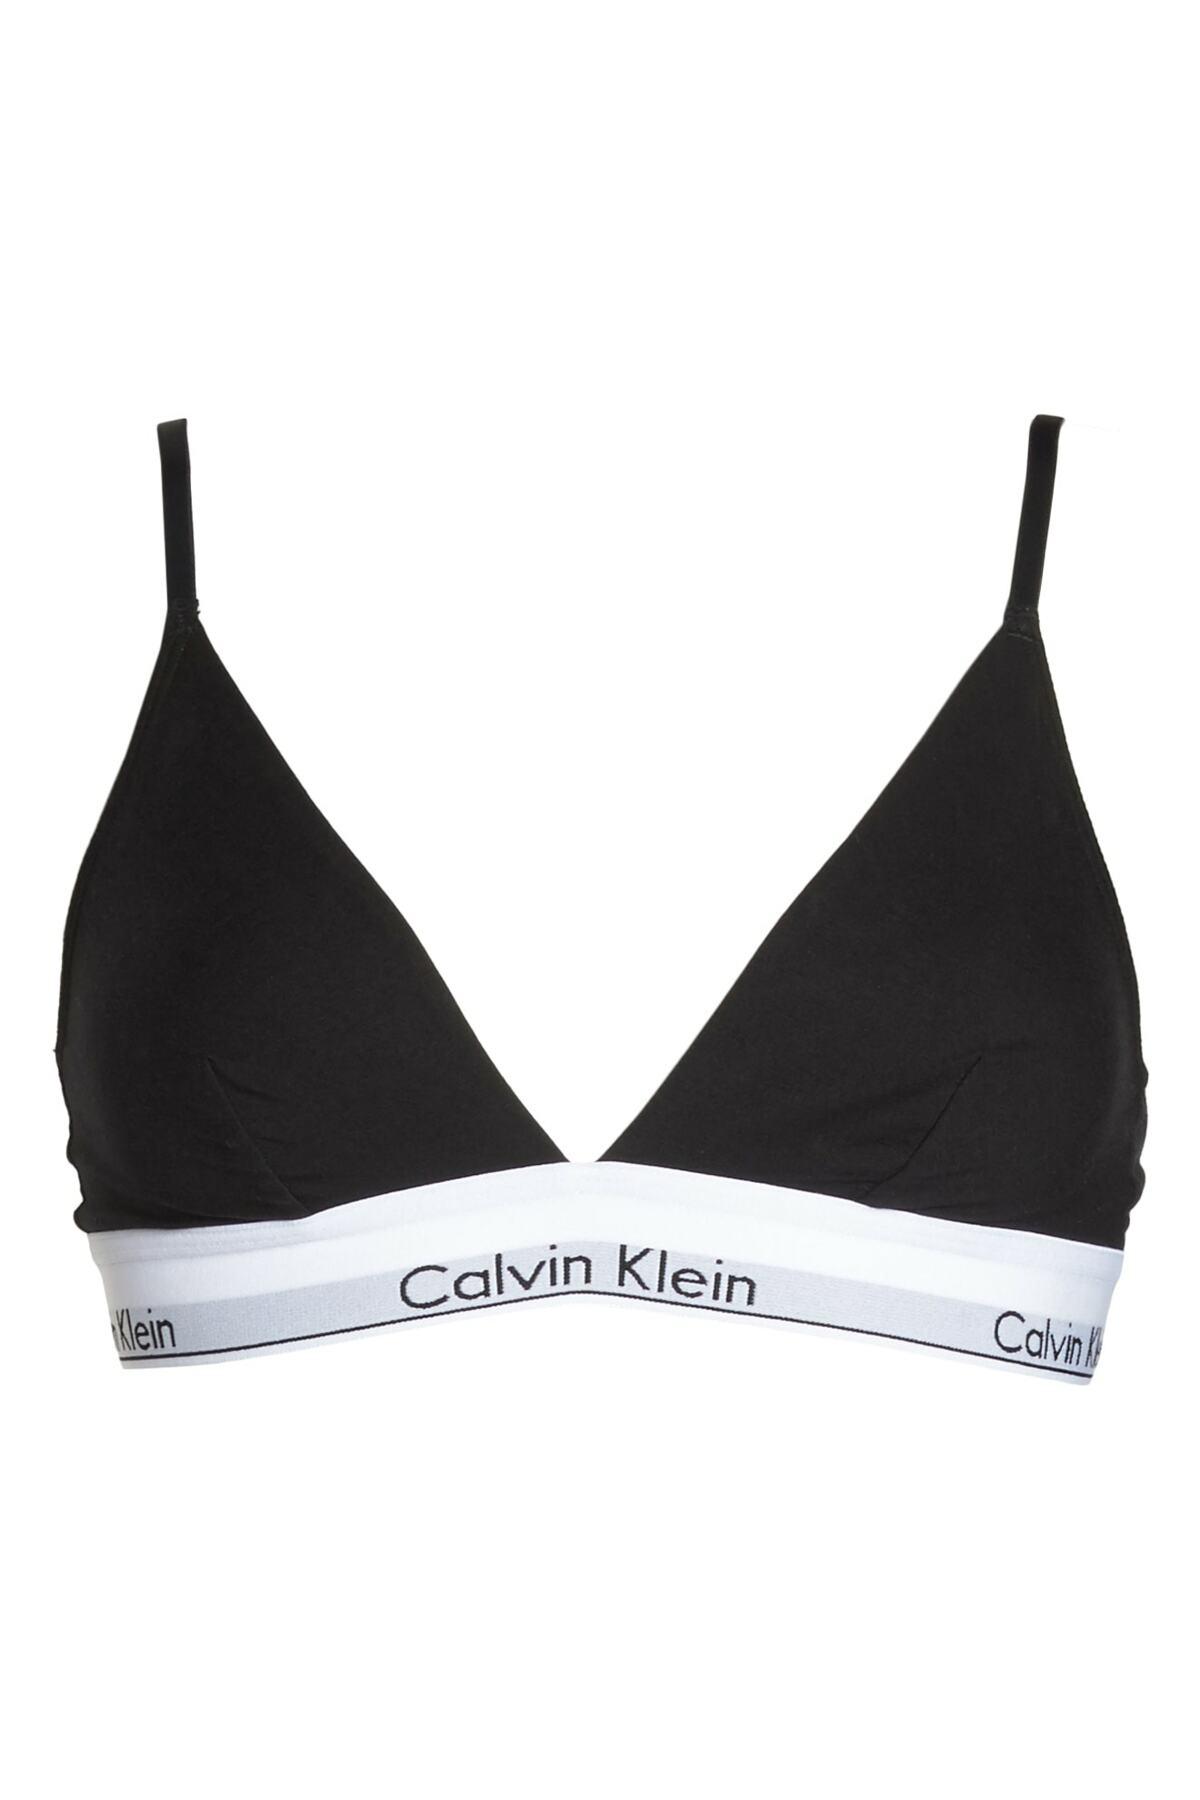 Calvin Klein Cotton Modern Triangle Bralette in Black - Lyst